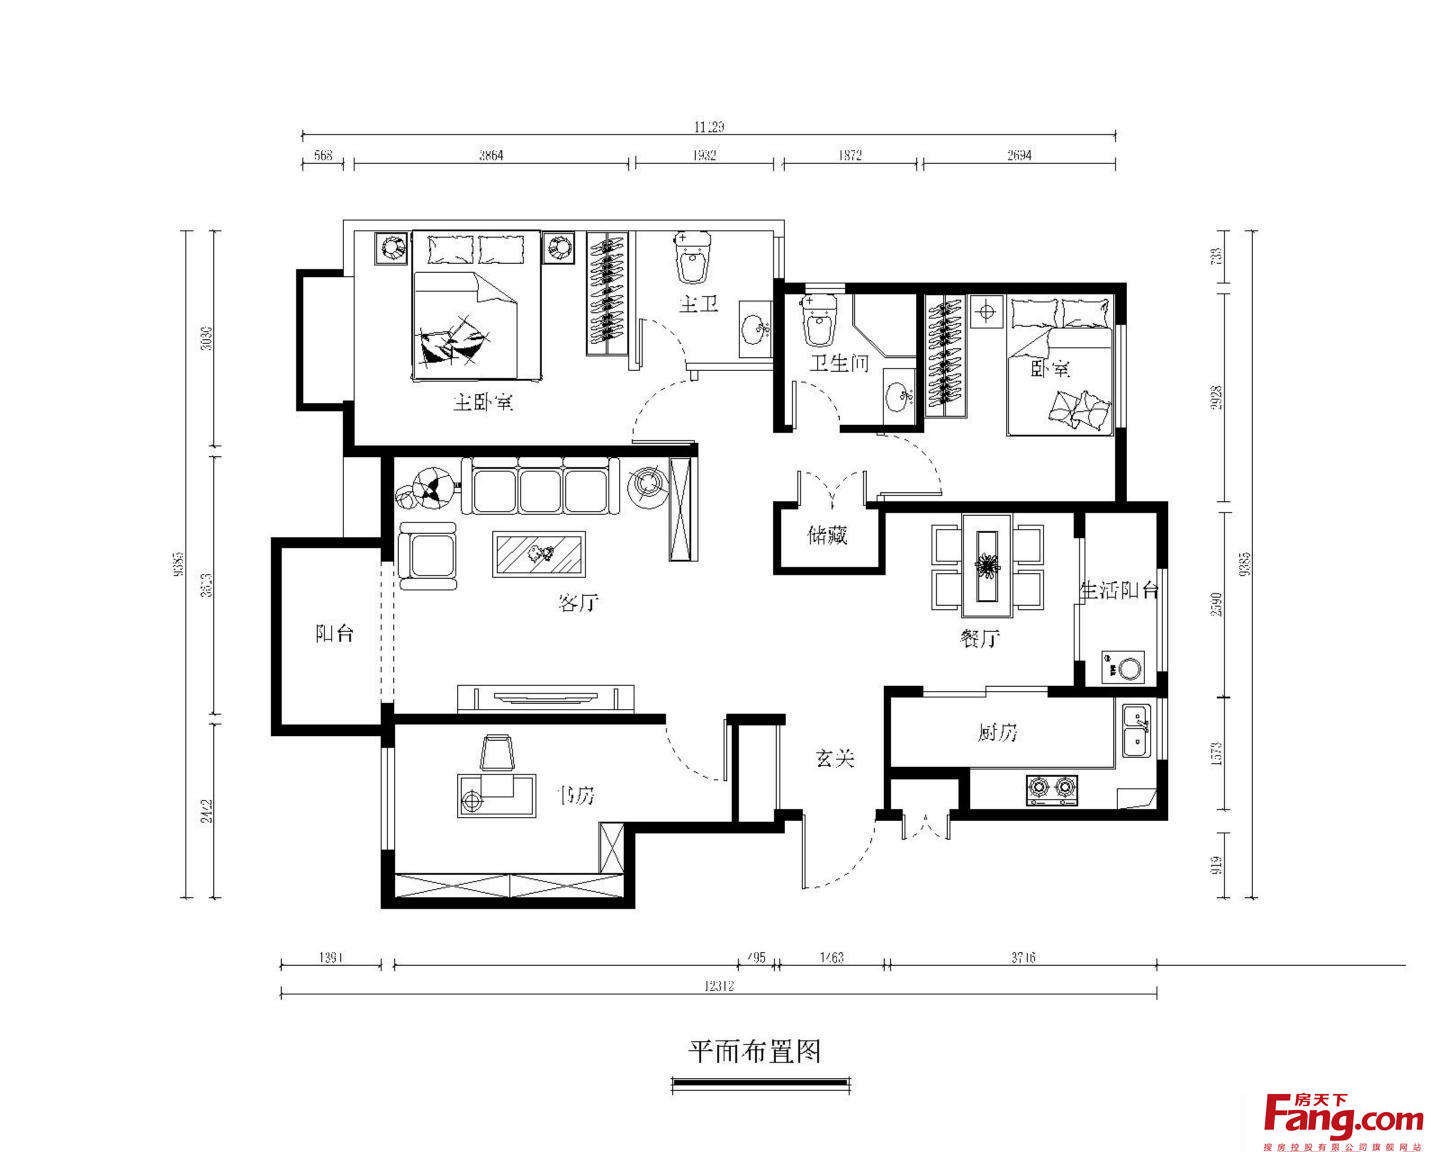 龙辰苑 - 现代风格三室两厅装修效果图 - 贺思璇设计效果图 - 每平每屋·设计家